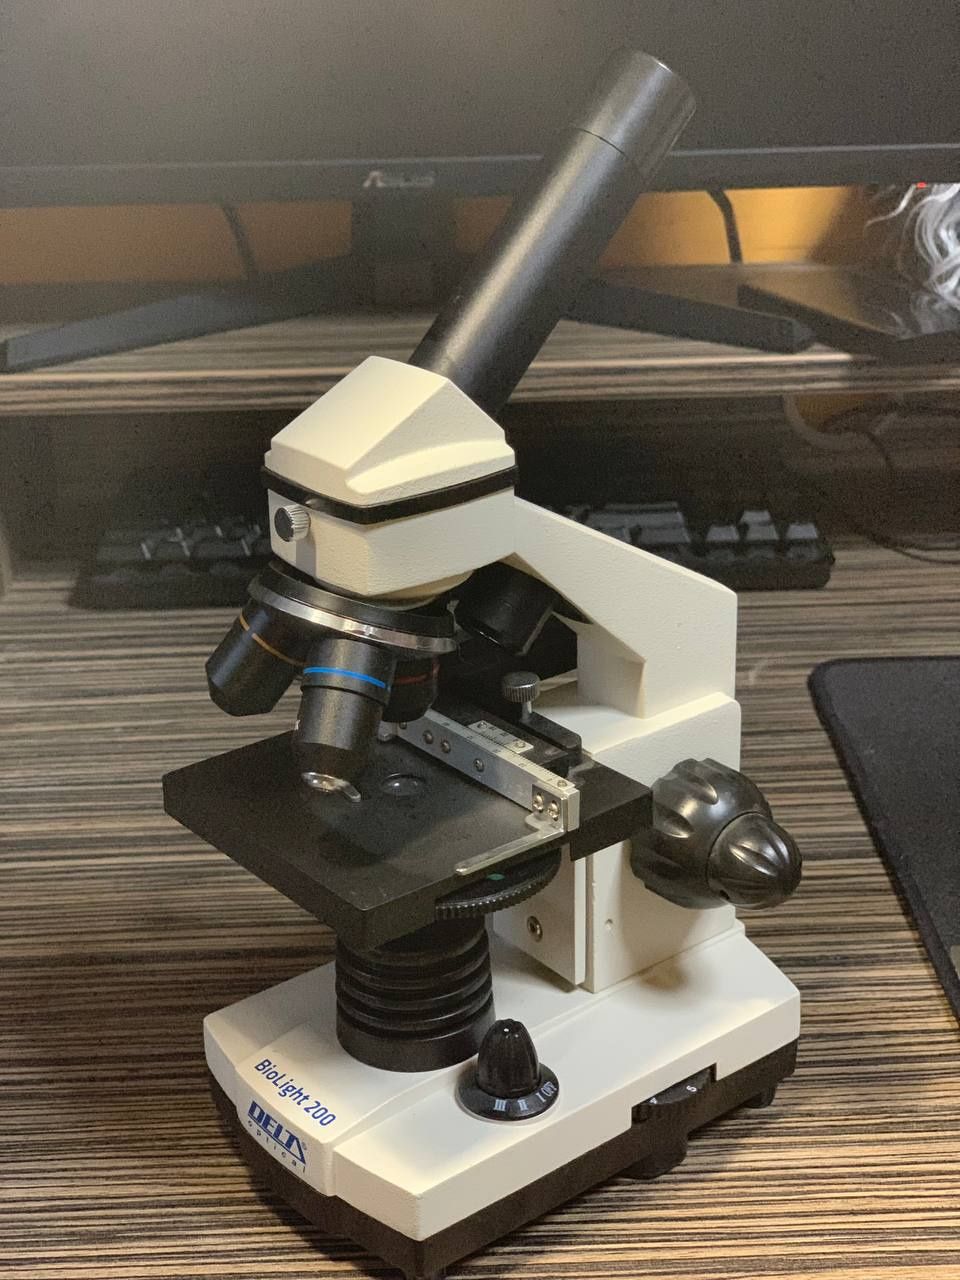 Микроскоп Delta Optikal BioLight 200